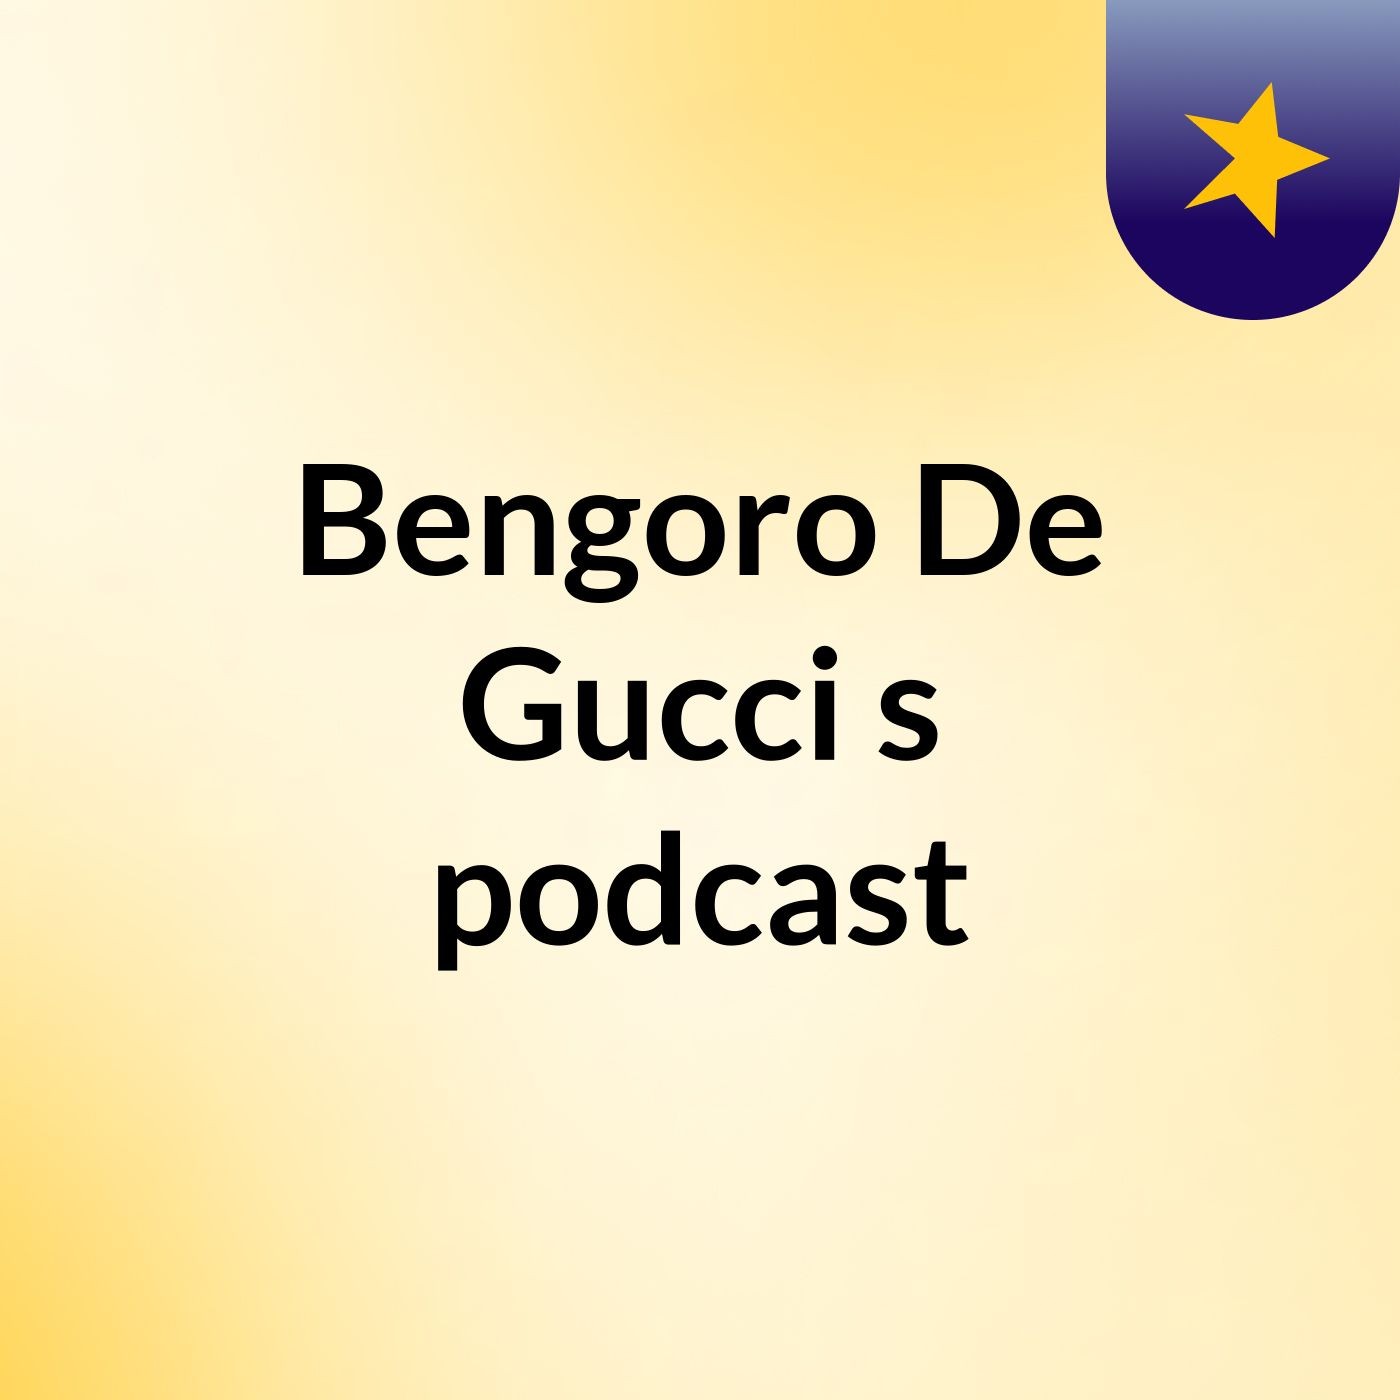 Bengoro De Gucci's podcast